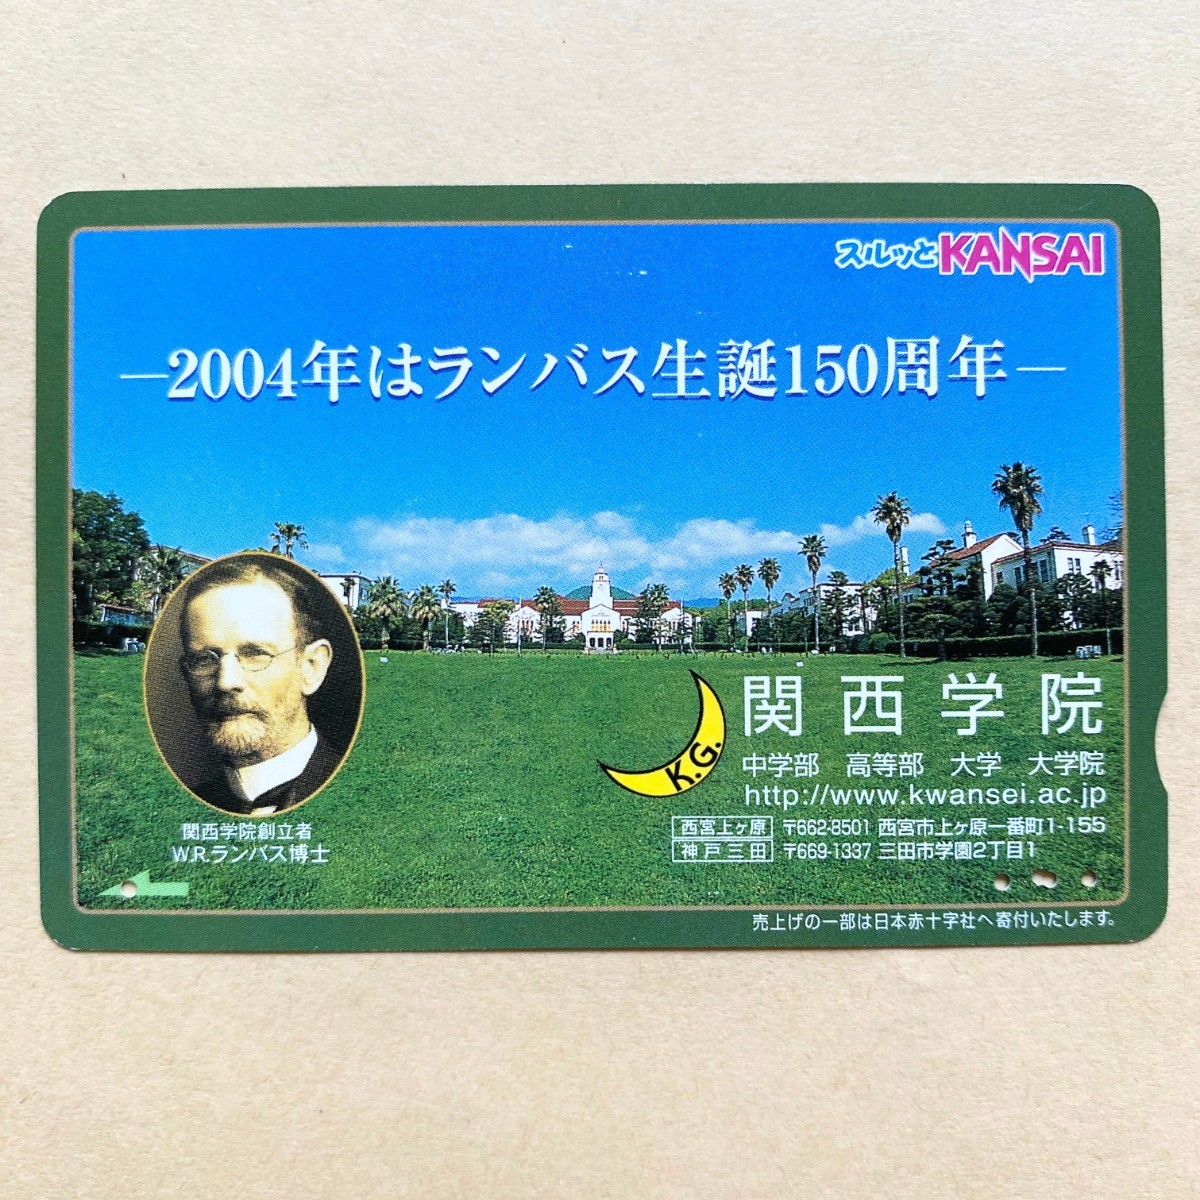 【使用済】 スルッとKANSAI 阪急電鉄 2004年 ランバス生誕150周年 関西学院_画像1